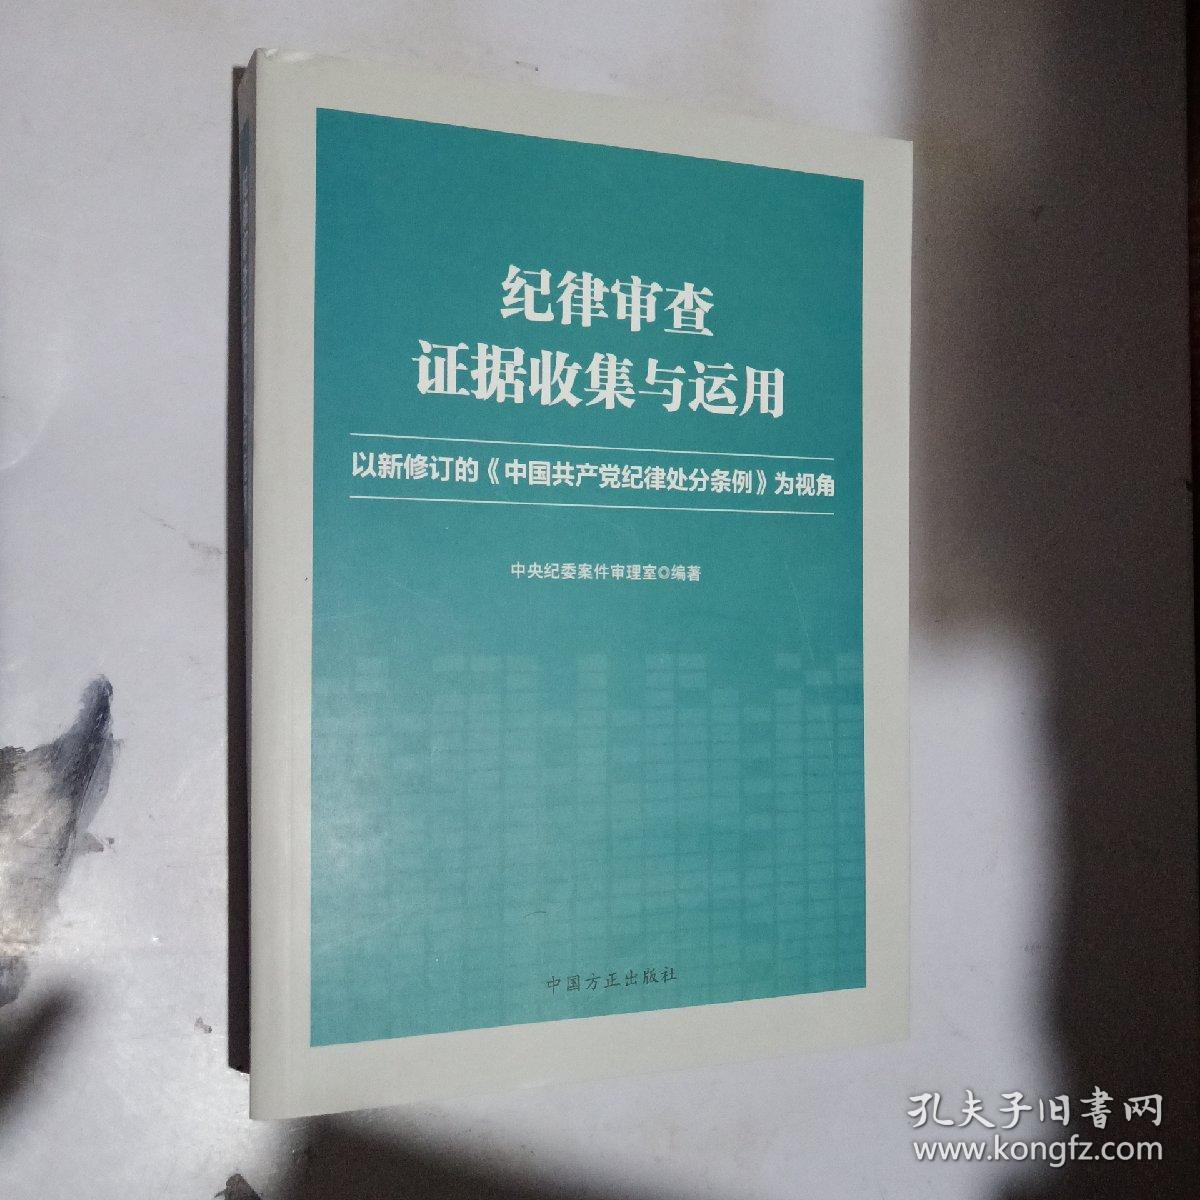 纪律审查证据收集与运用:以新修订的《中国共产党纪律处分条例》为视角